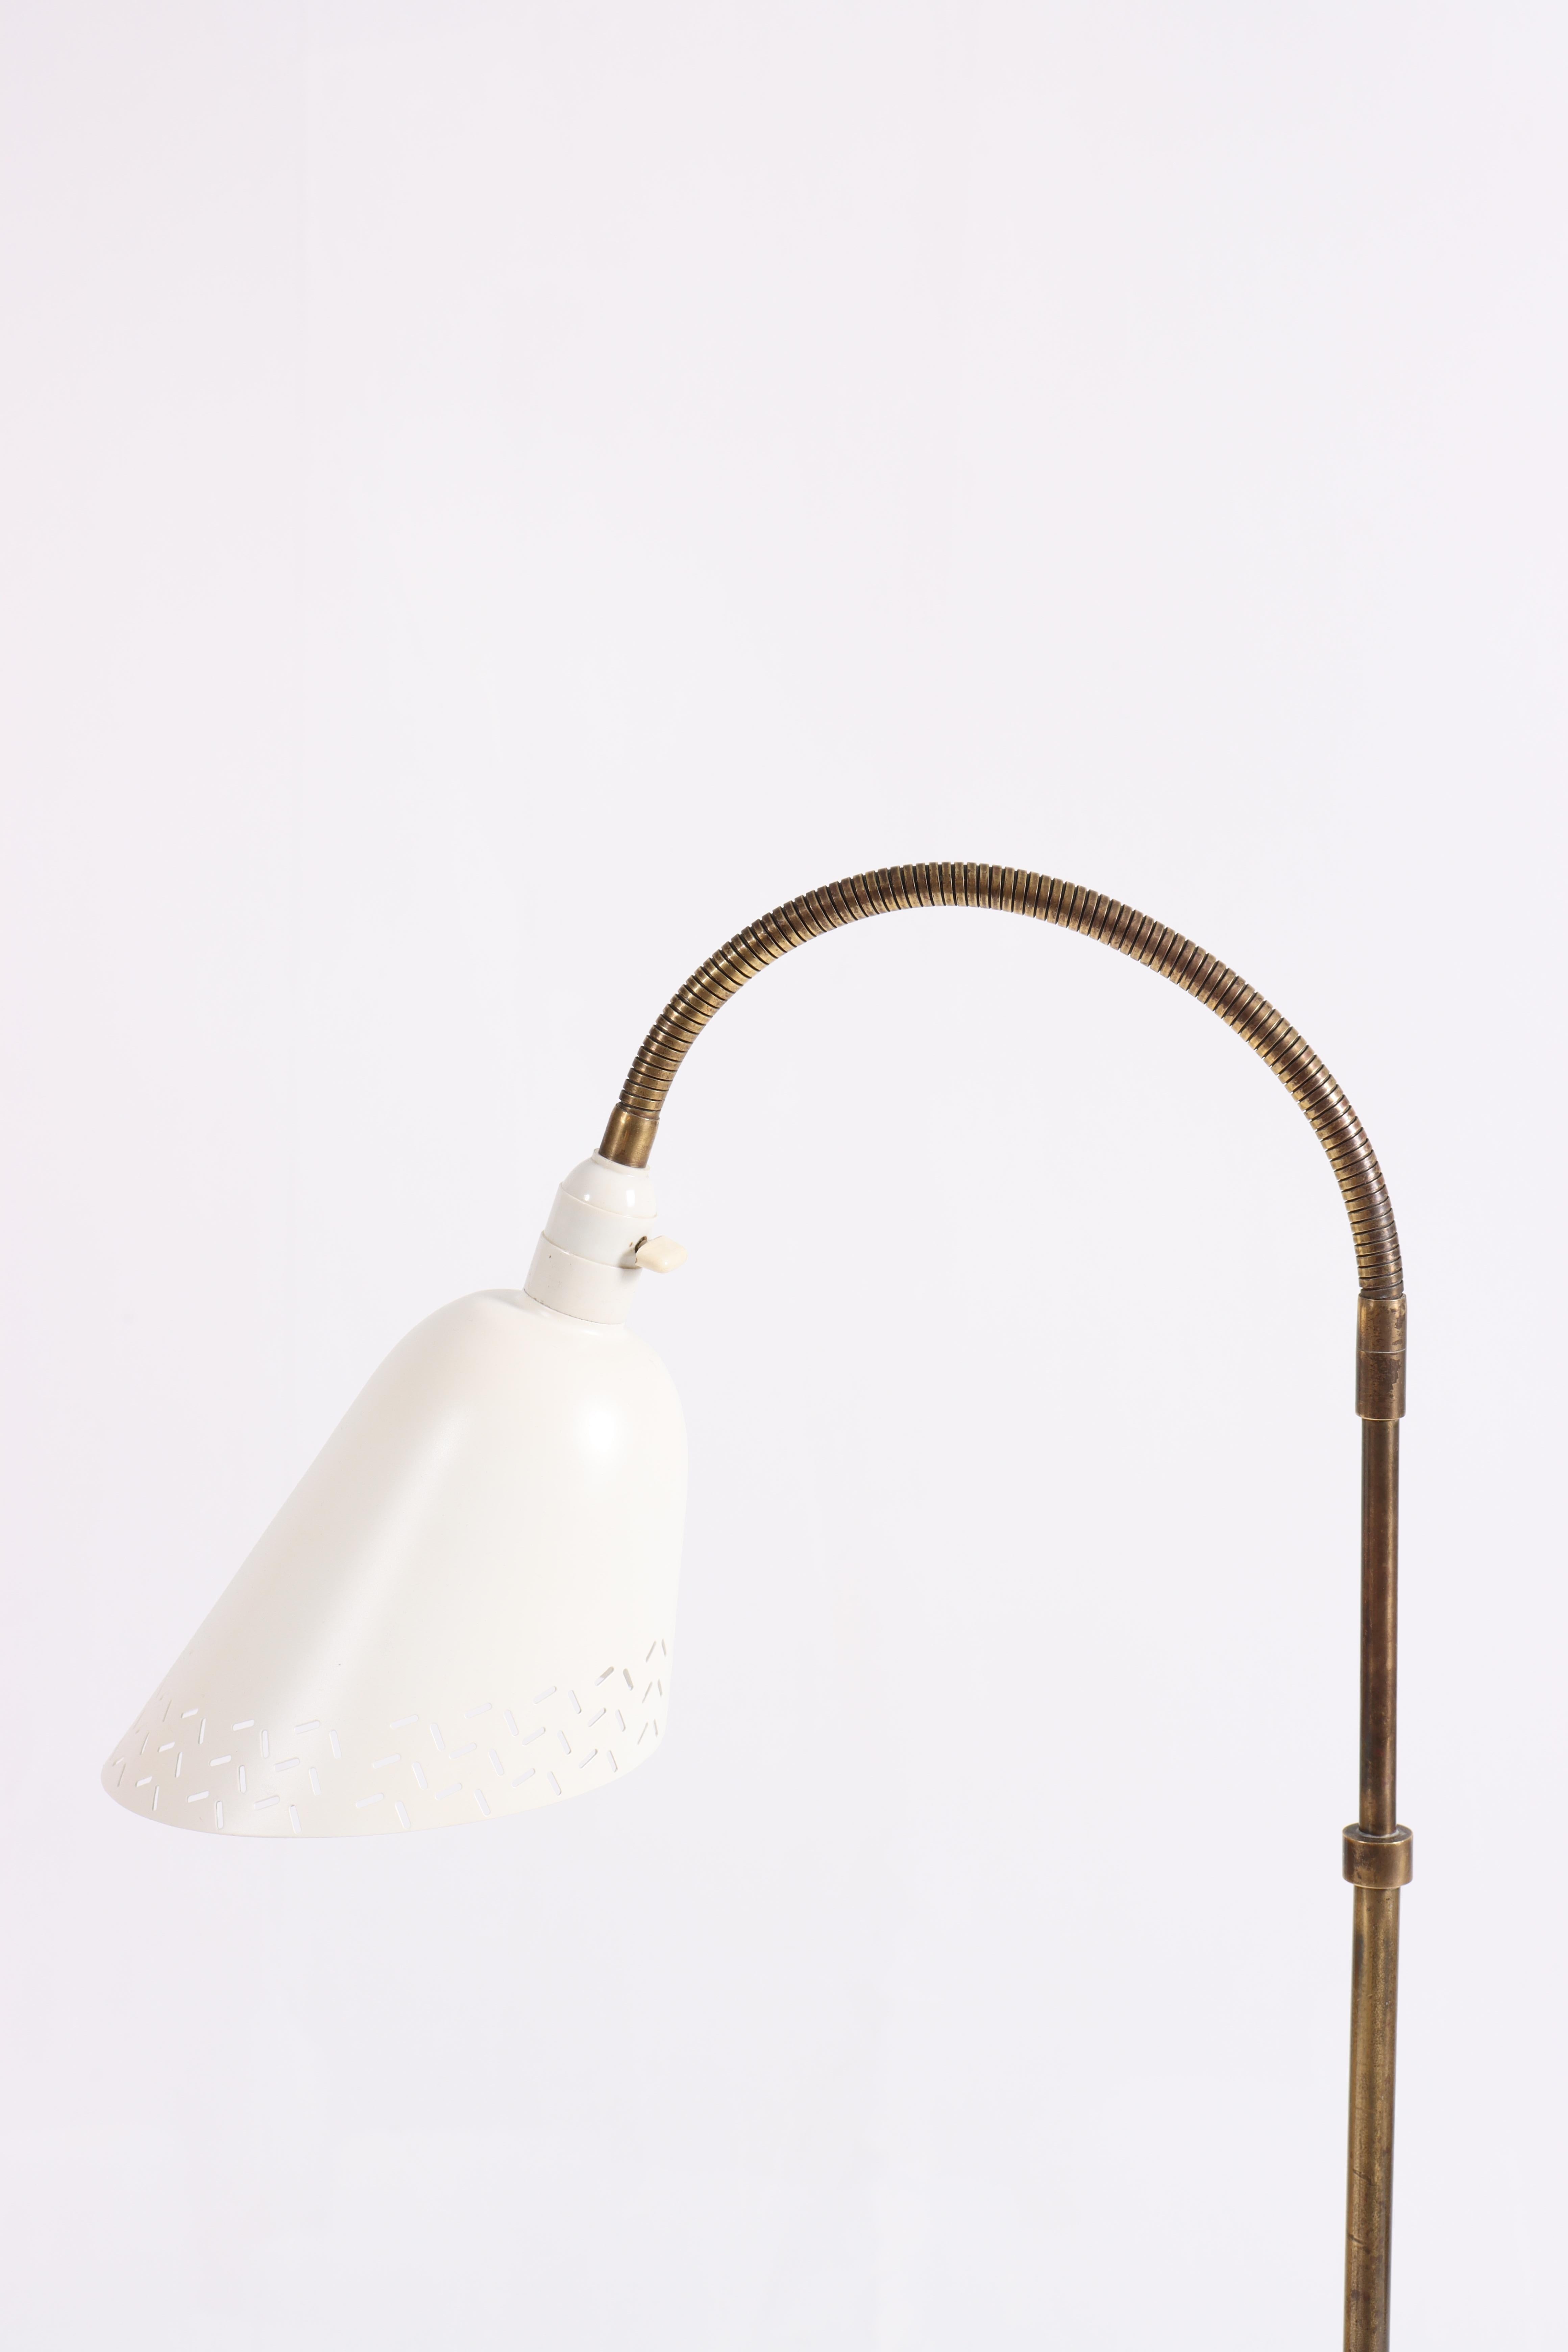 Danish Bellevue Floor Lamp by Arne Jacobsen, Scandinavian Modern, 1960s For Sale